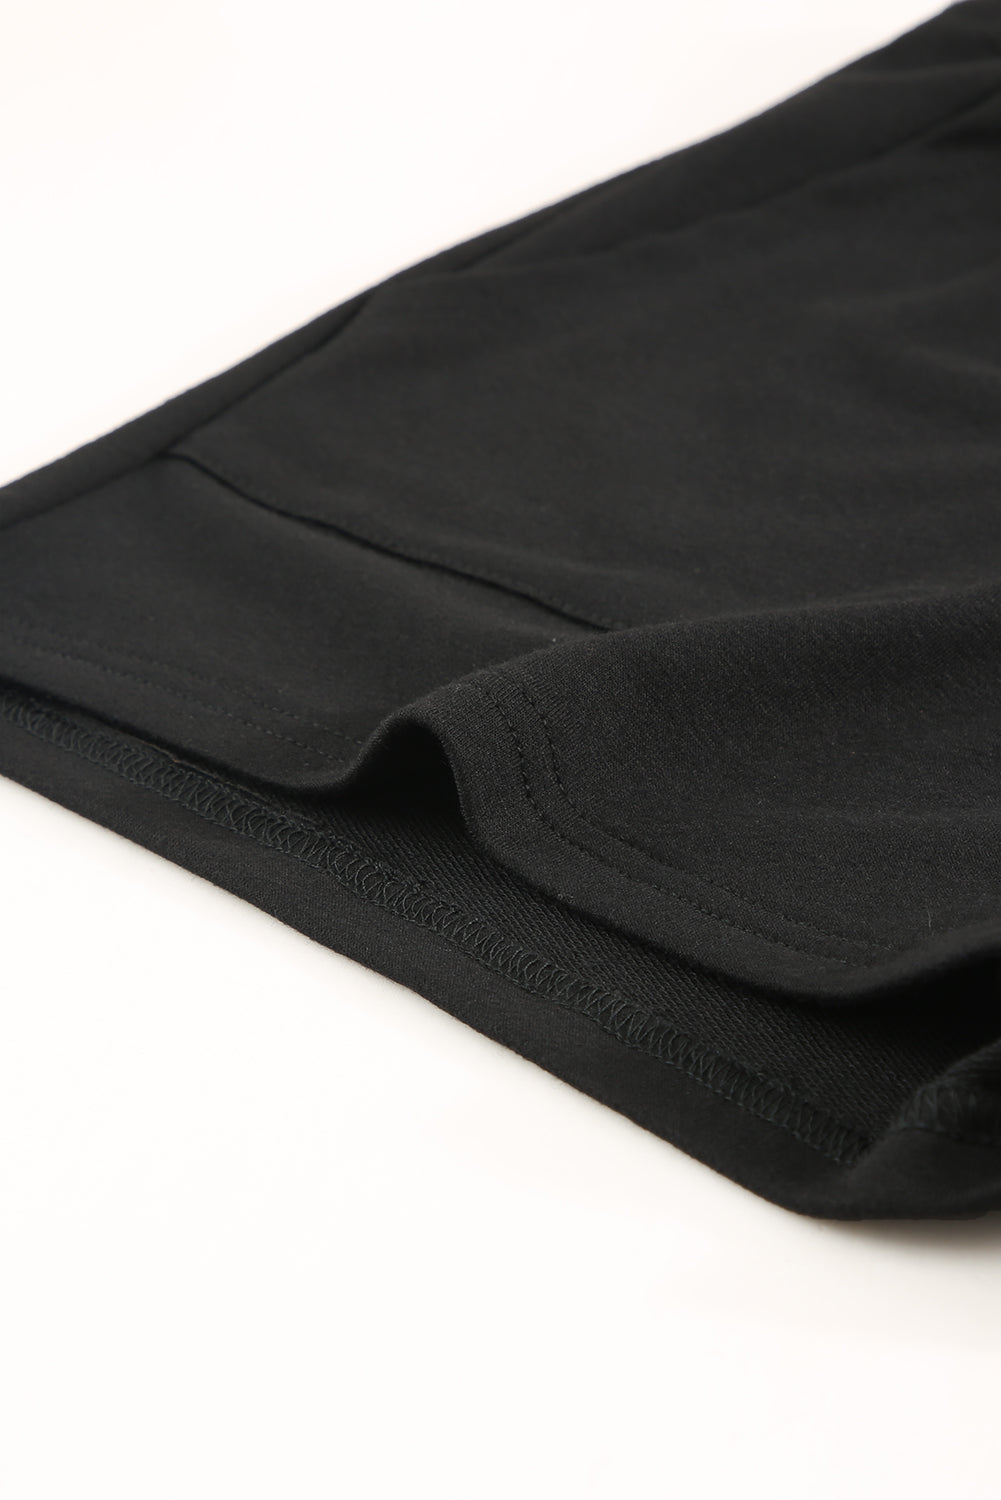 Crne kratke hlače s džepovima na vezicu u struku